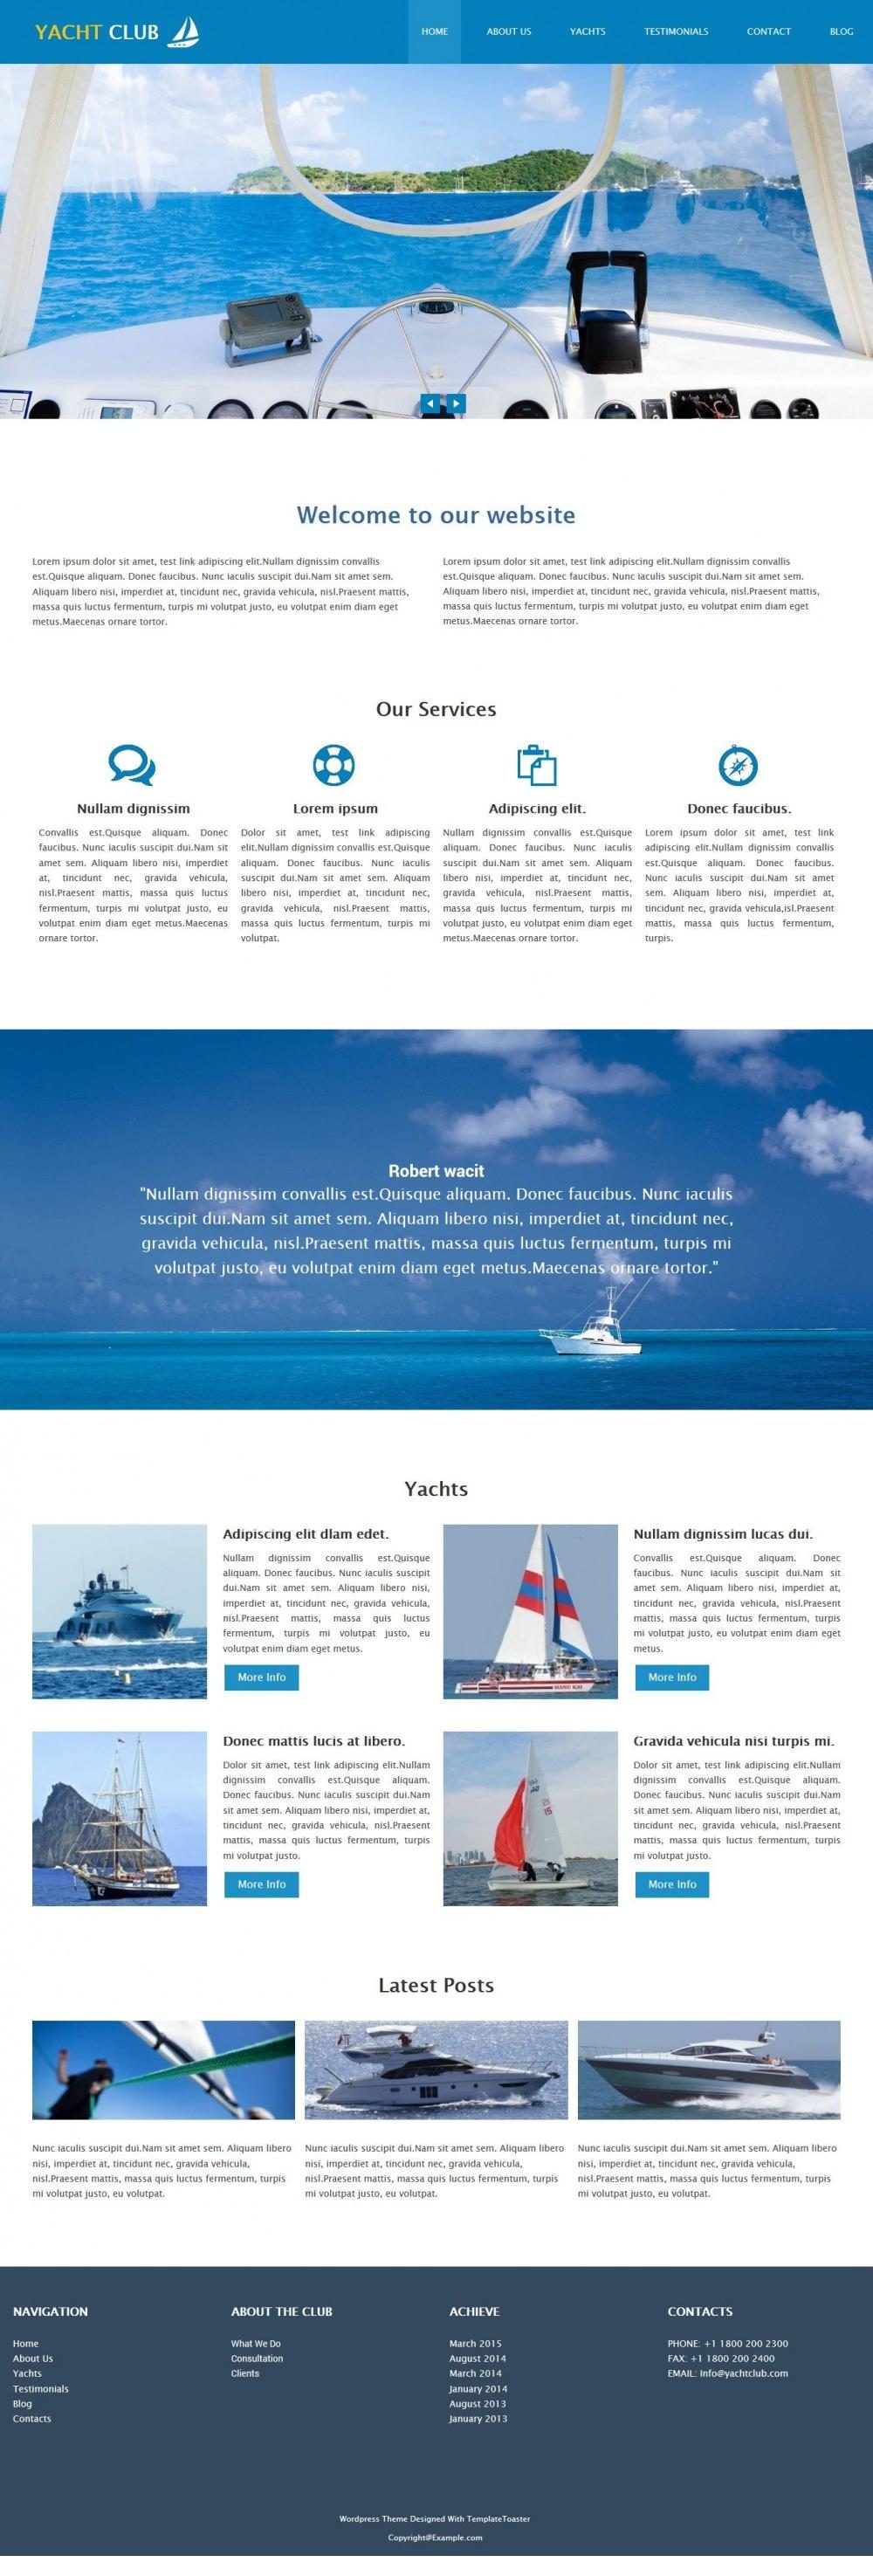 Yacht Club - Professional Sports/Yacht Club Free WordPress Theme